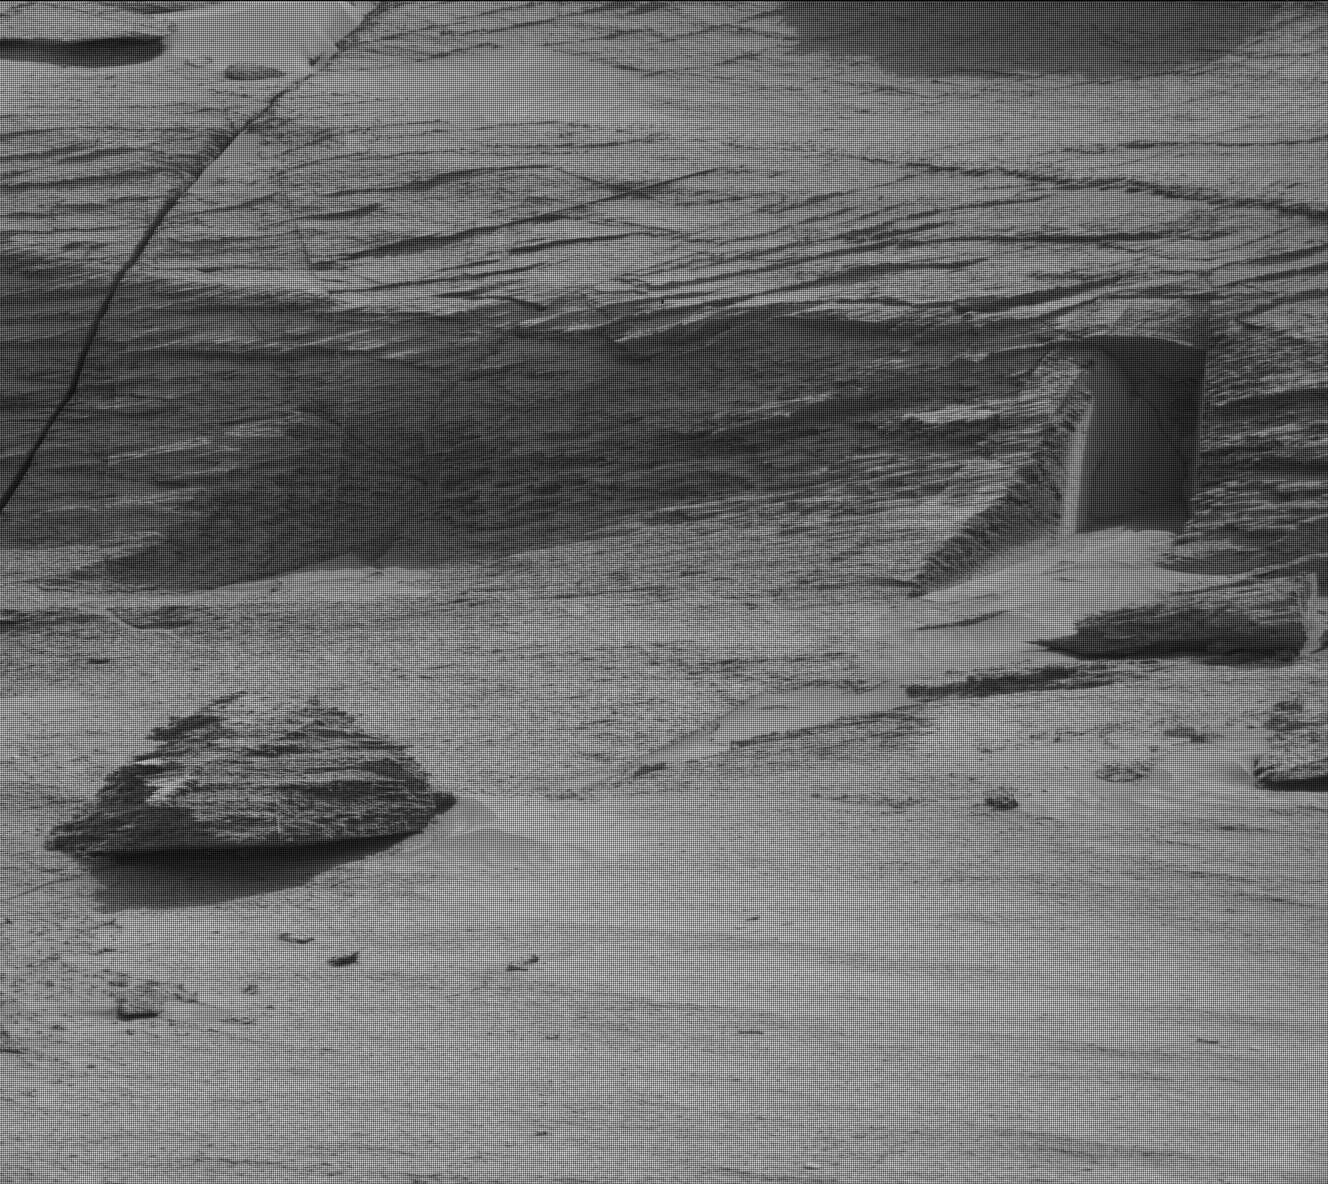 Фото дня: марсоход Curiosity обнаружил загадочное отверстие в марсианской скале